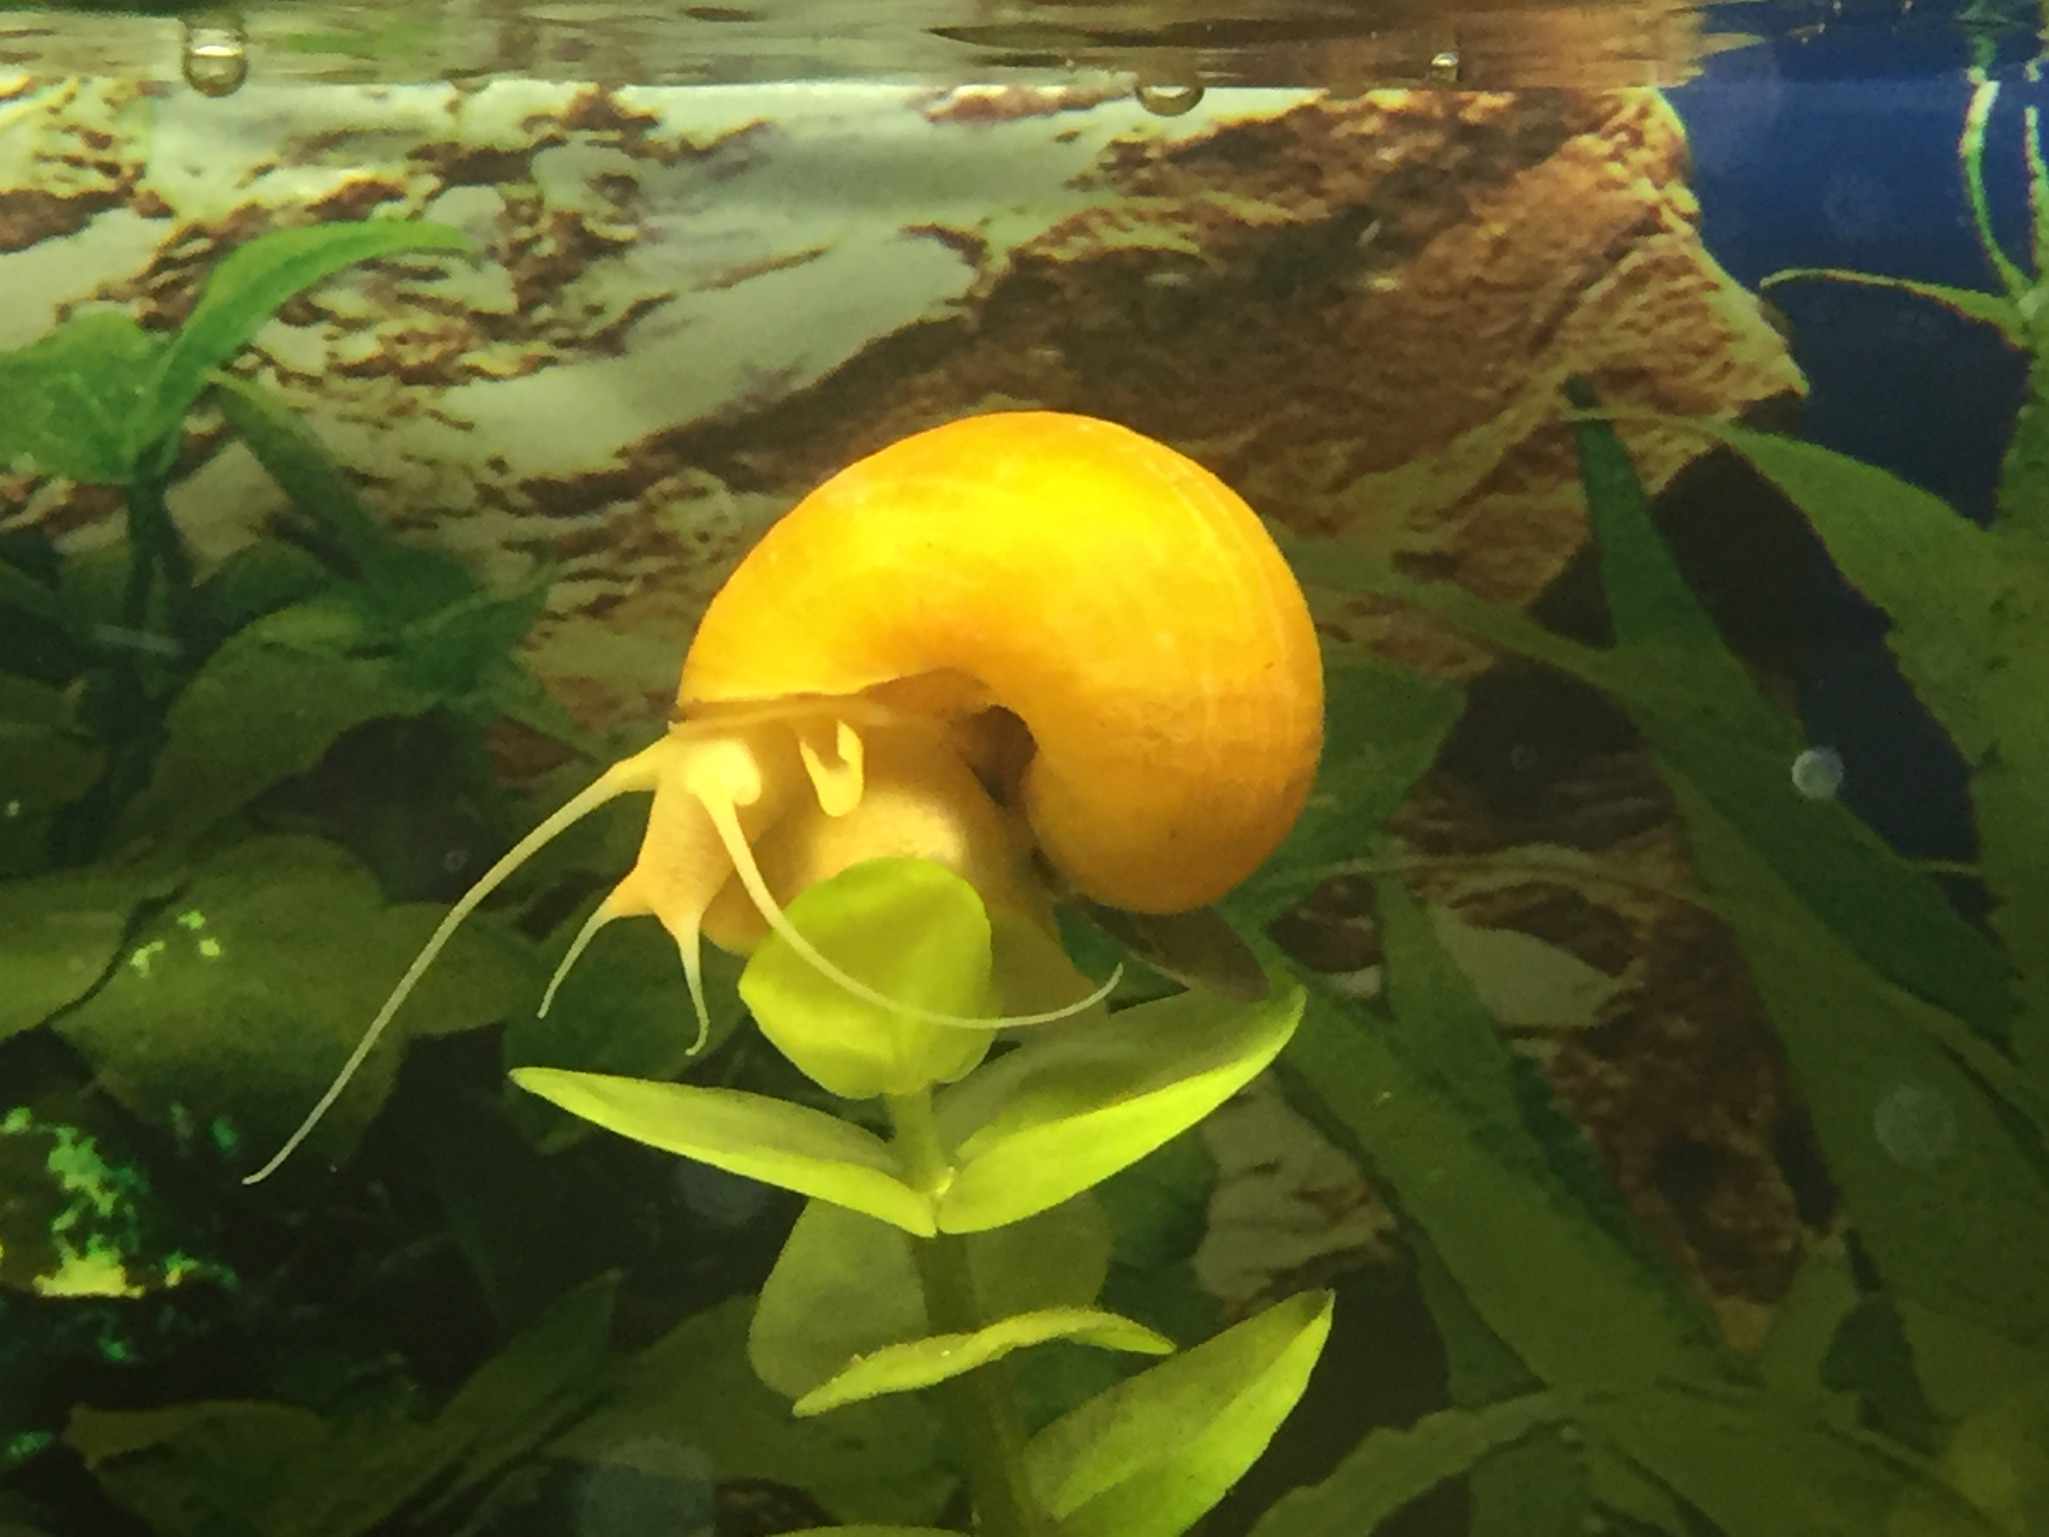 一只金黄色的苹果蜗牛附在一株绿色植物上